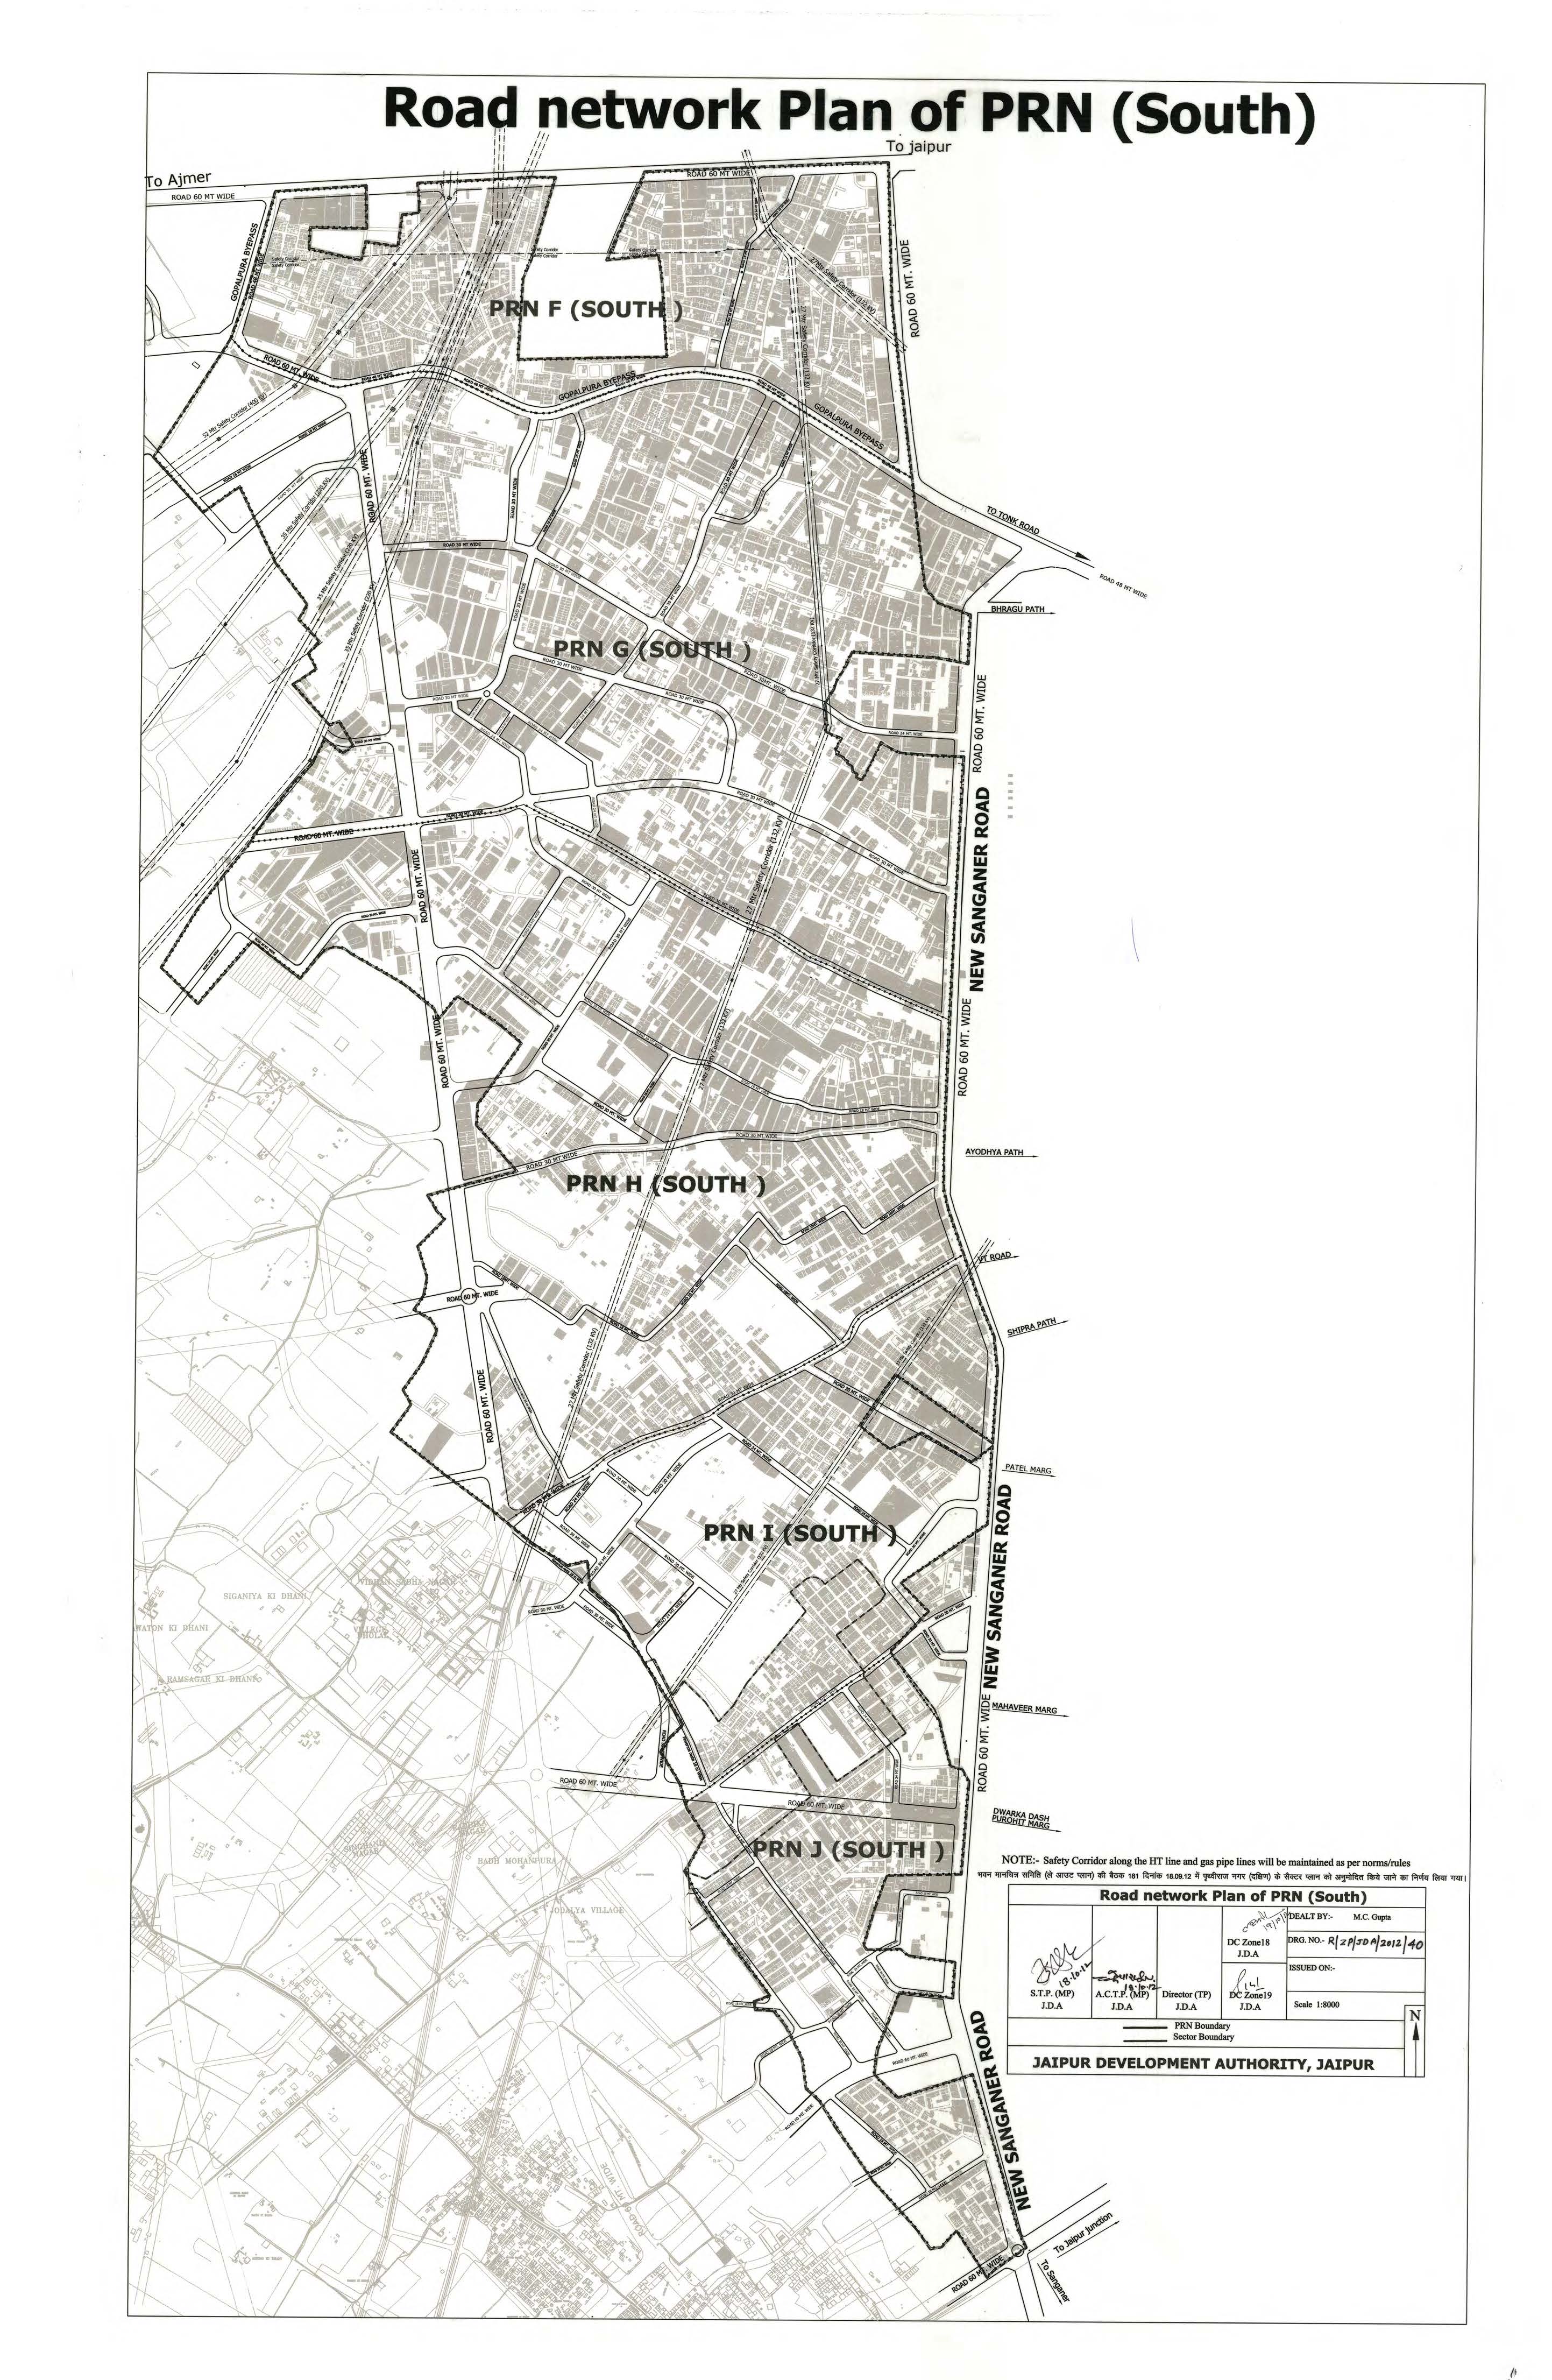 PRN दक्षिण की फ़ाइनल सड़क नेटवर्क योजना